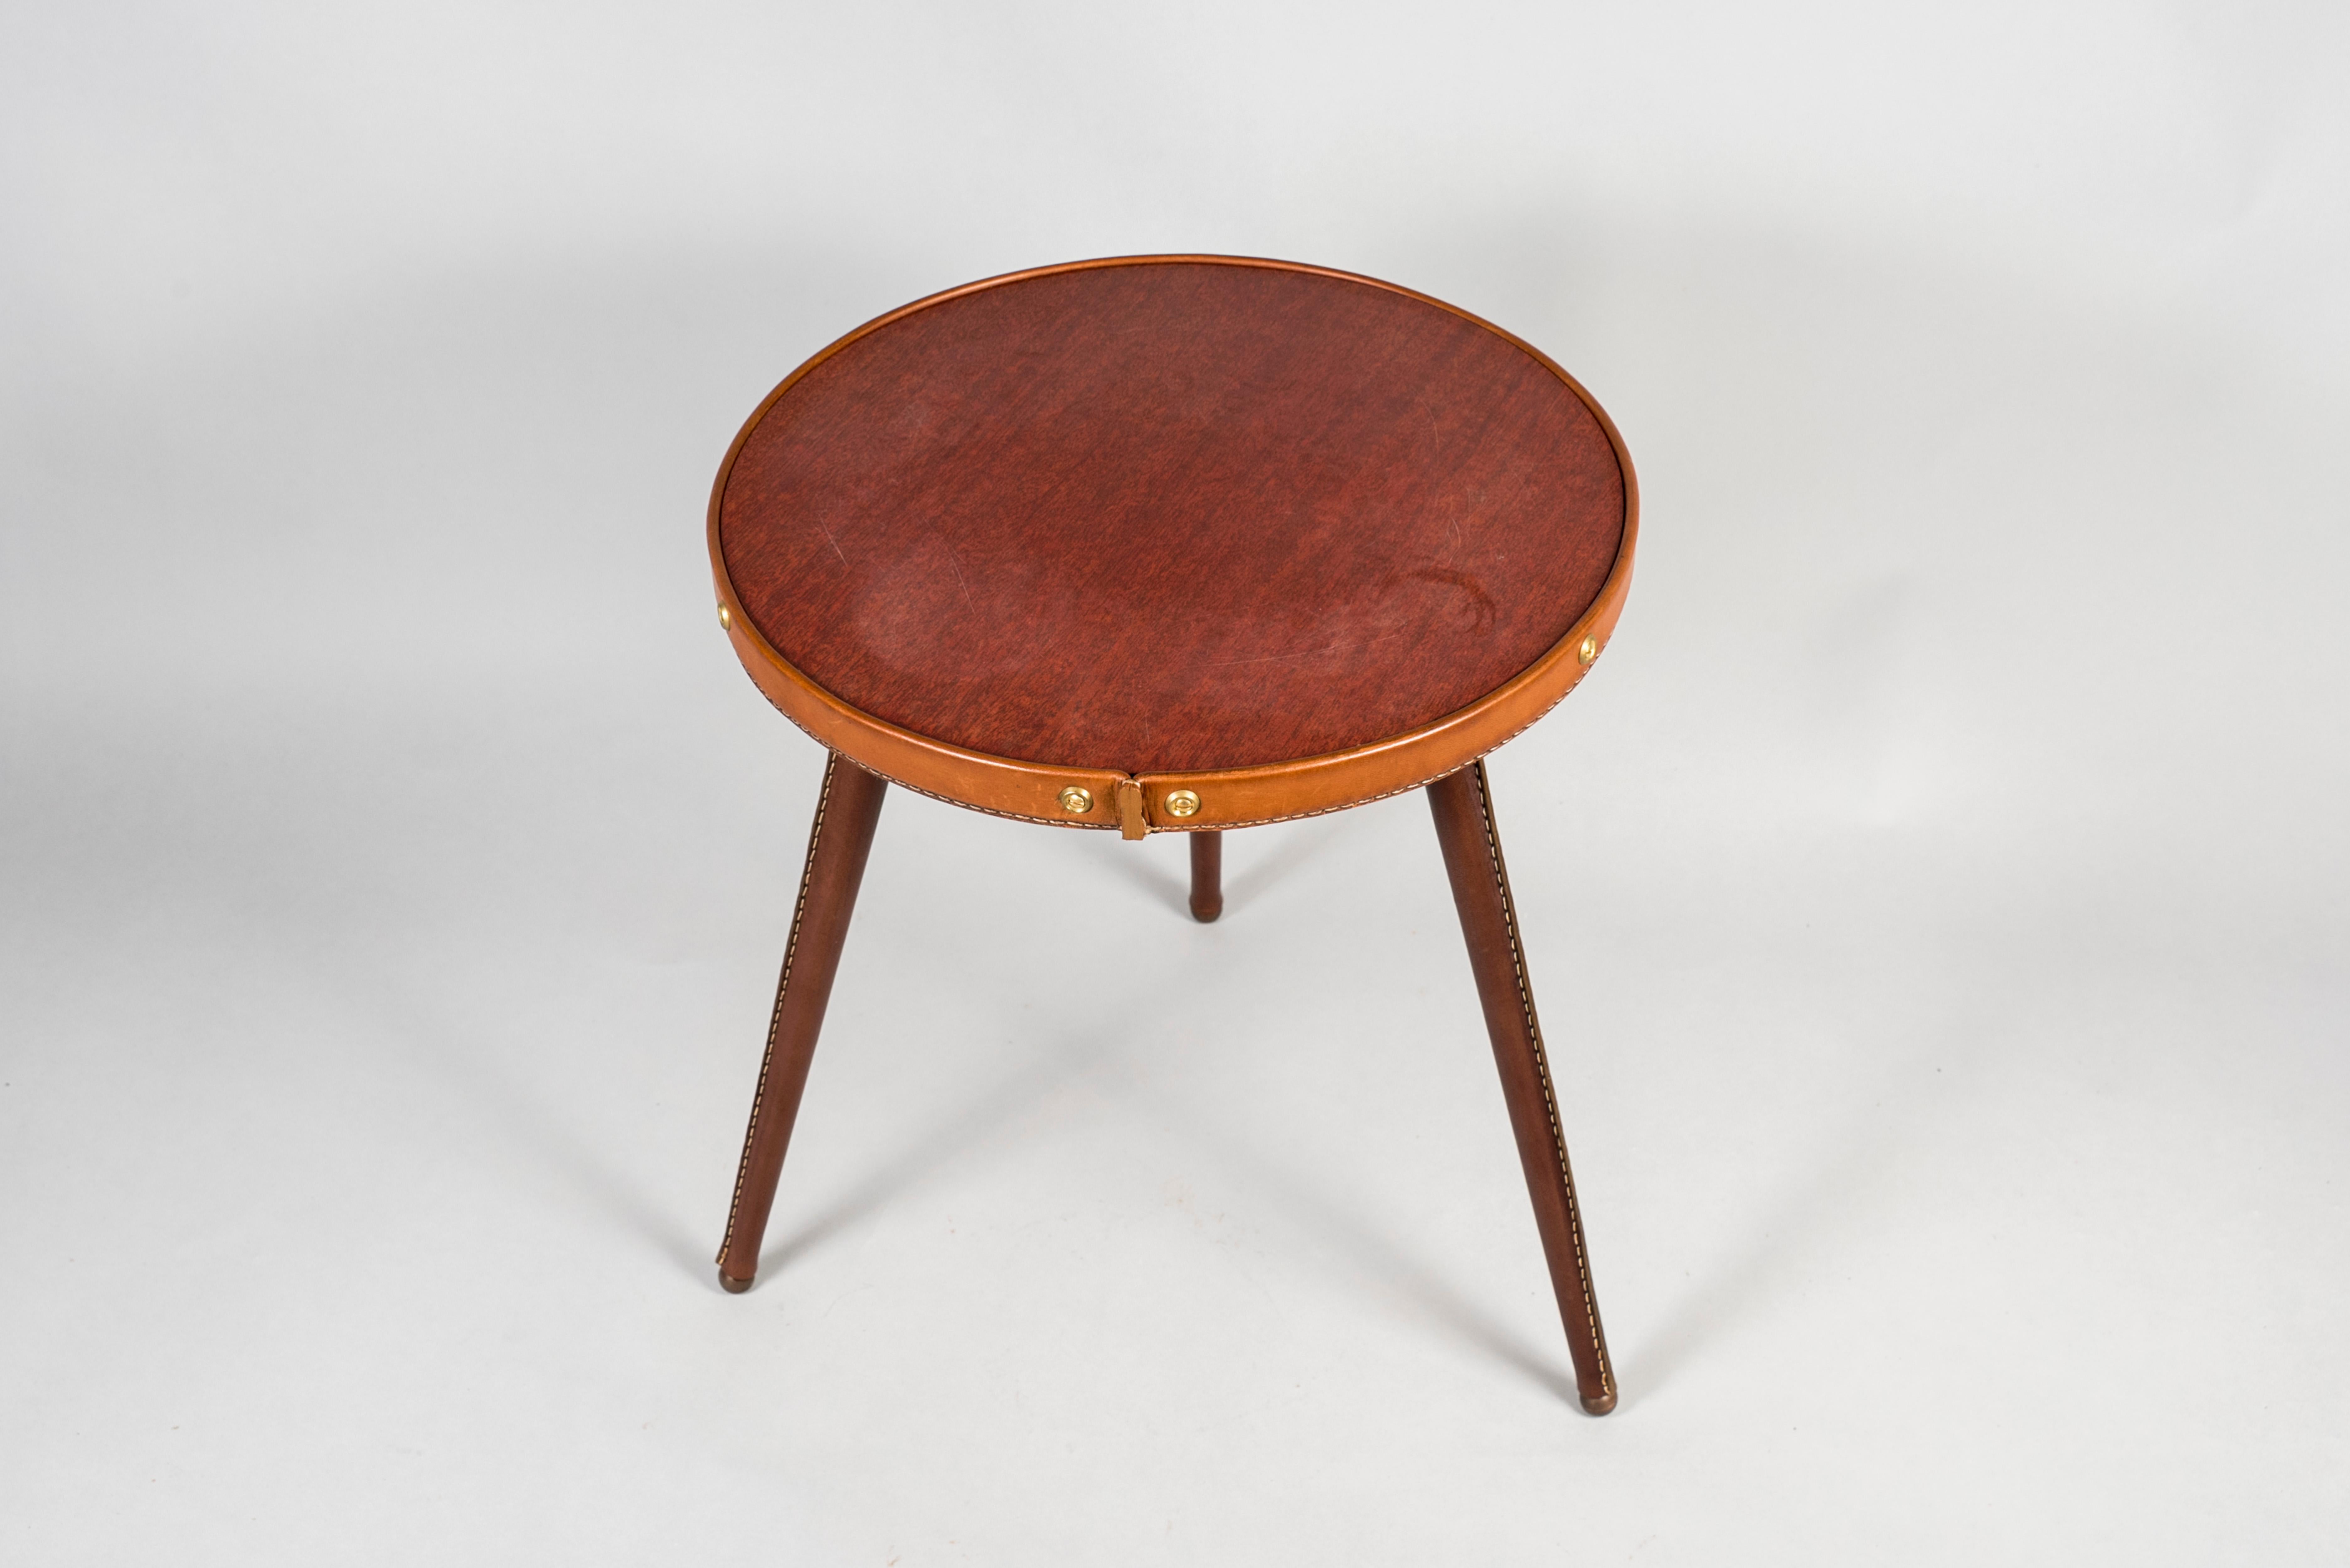 Très belle petite table recouverte de cuir cousu.
Recouvrez de formica brun.
Conçu par Jacques Adnet.
France.